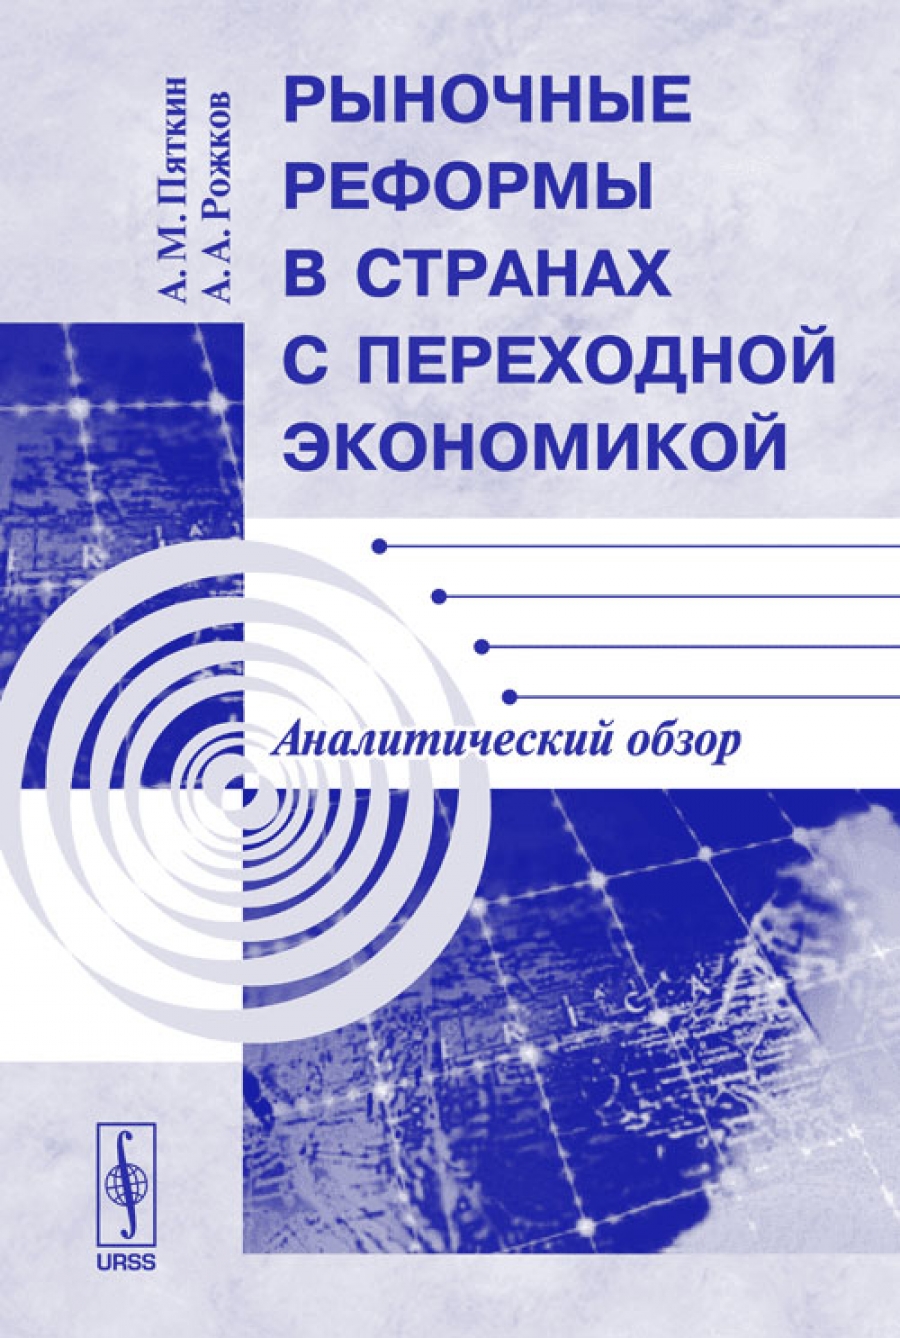 Пяткин А.М., Рожков А.А. Рыночные реформы в странах с переходной экономикой: Аналитический обзор 